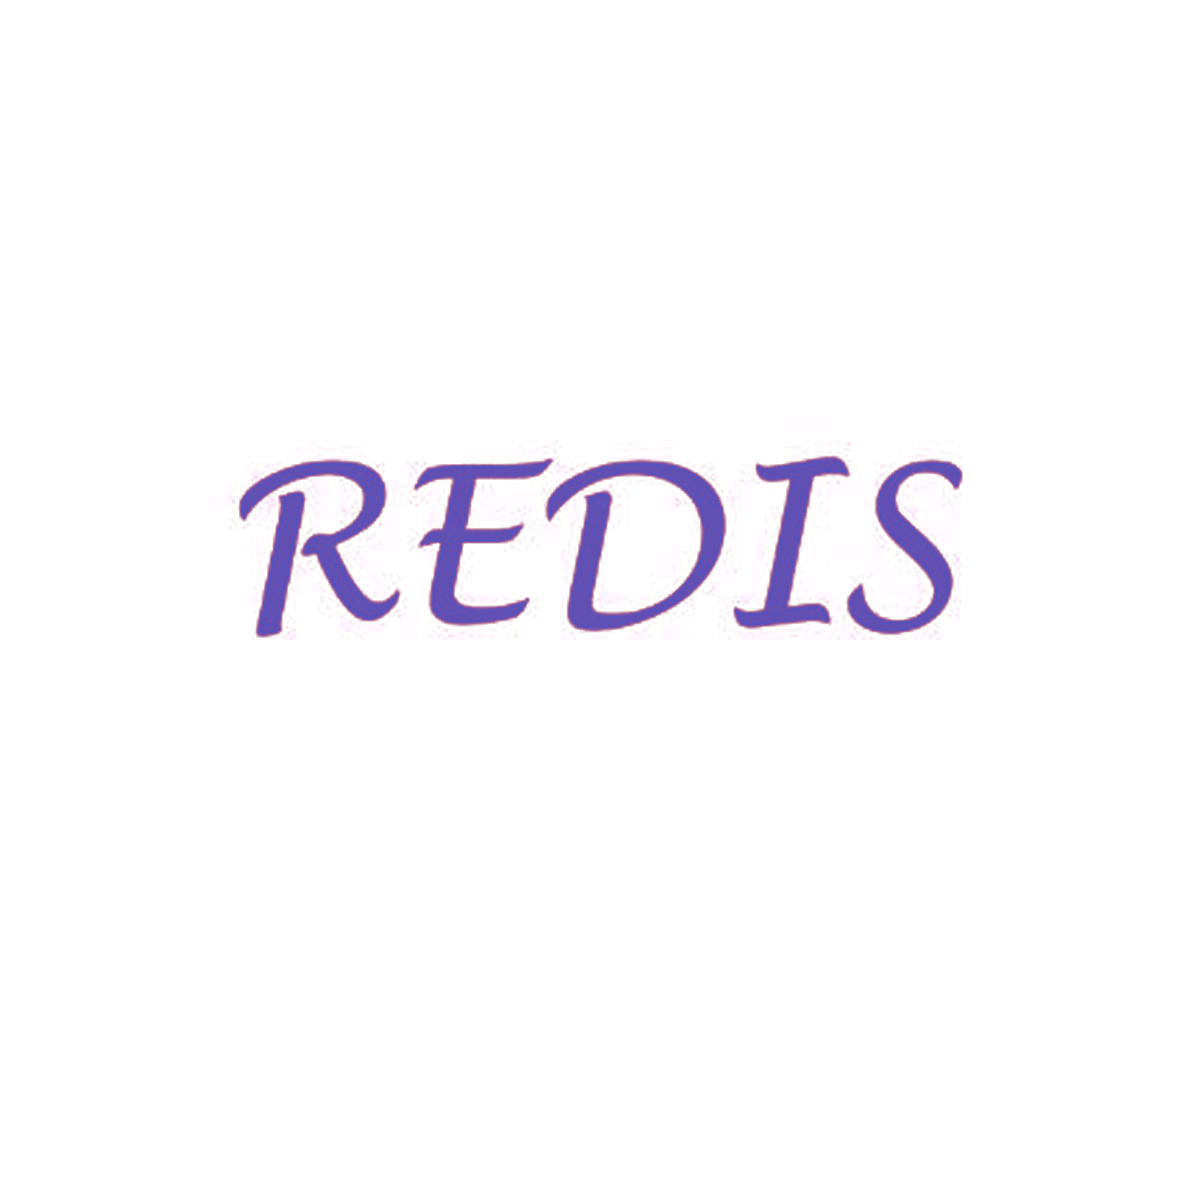 REDIS